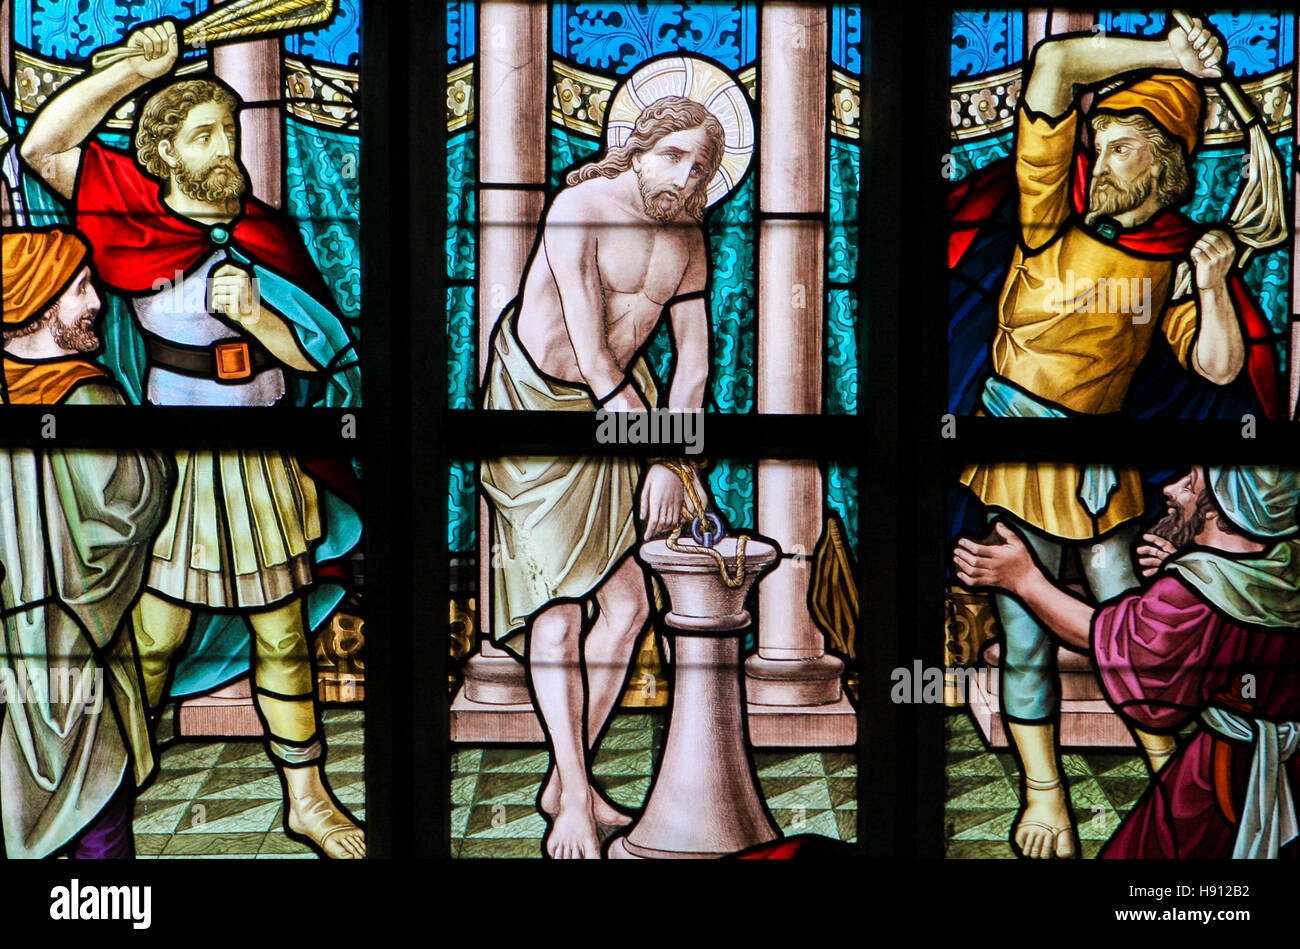 Glasmalerei-Fenster Darstellung der Geißelung Jesu am Karfreitag in der Kirche Alsemberg, Belgien. Stockfoto